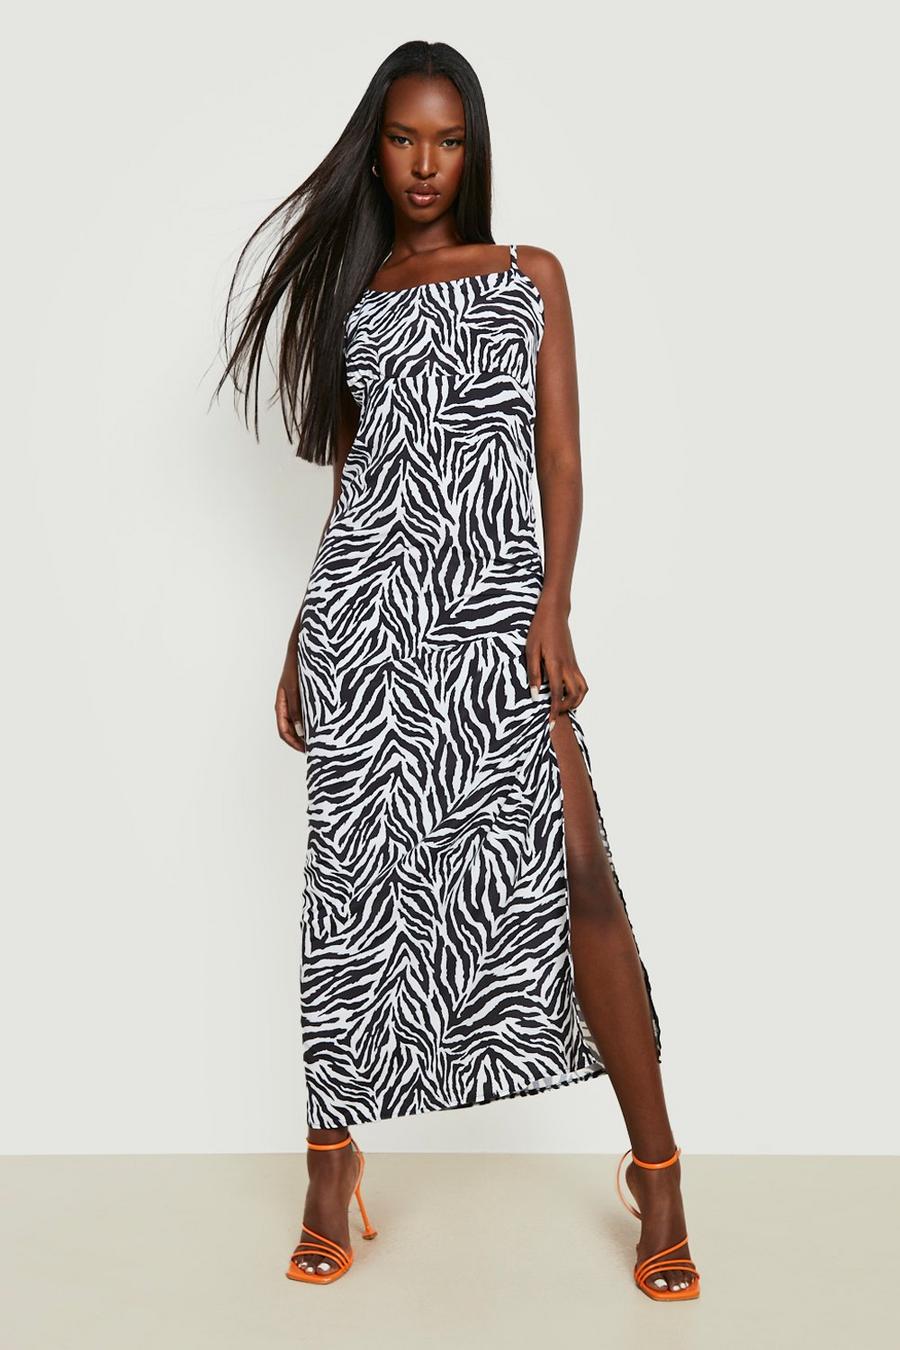 Black Zebra Printed Satin Slip Dress